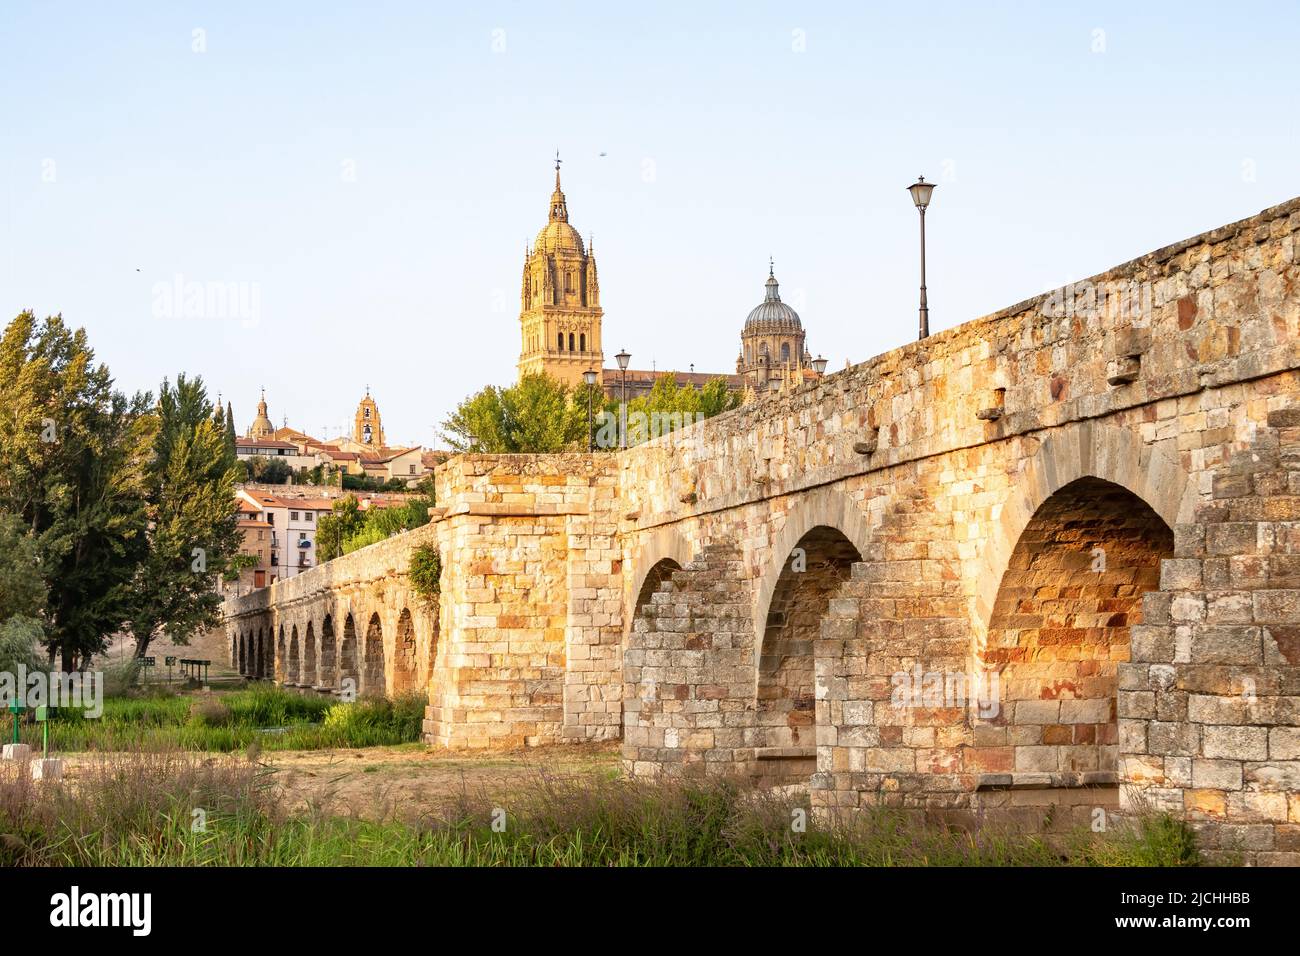 Die römische Brücke von Salamanca auf Spanisch, Puente romano de Salamanca, auch bekannt als Puente Mayor del rio Tormes, ist eine römische Brücke über die Tormes Stockfoto